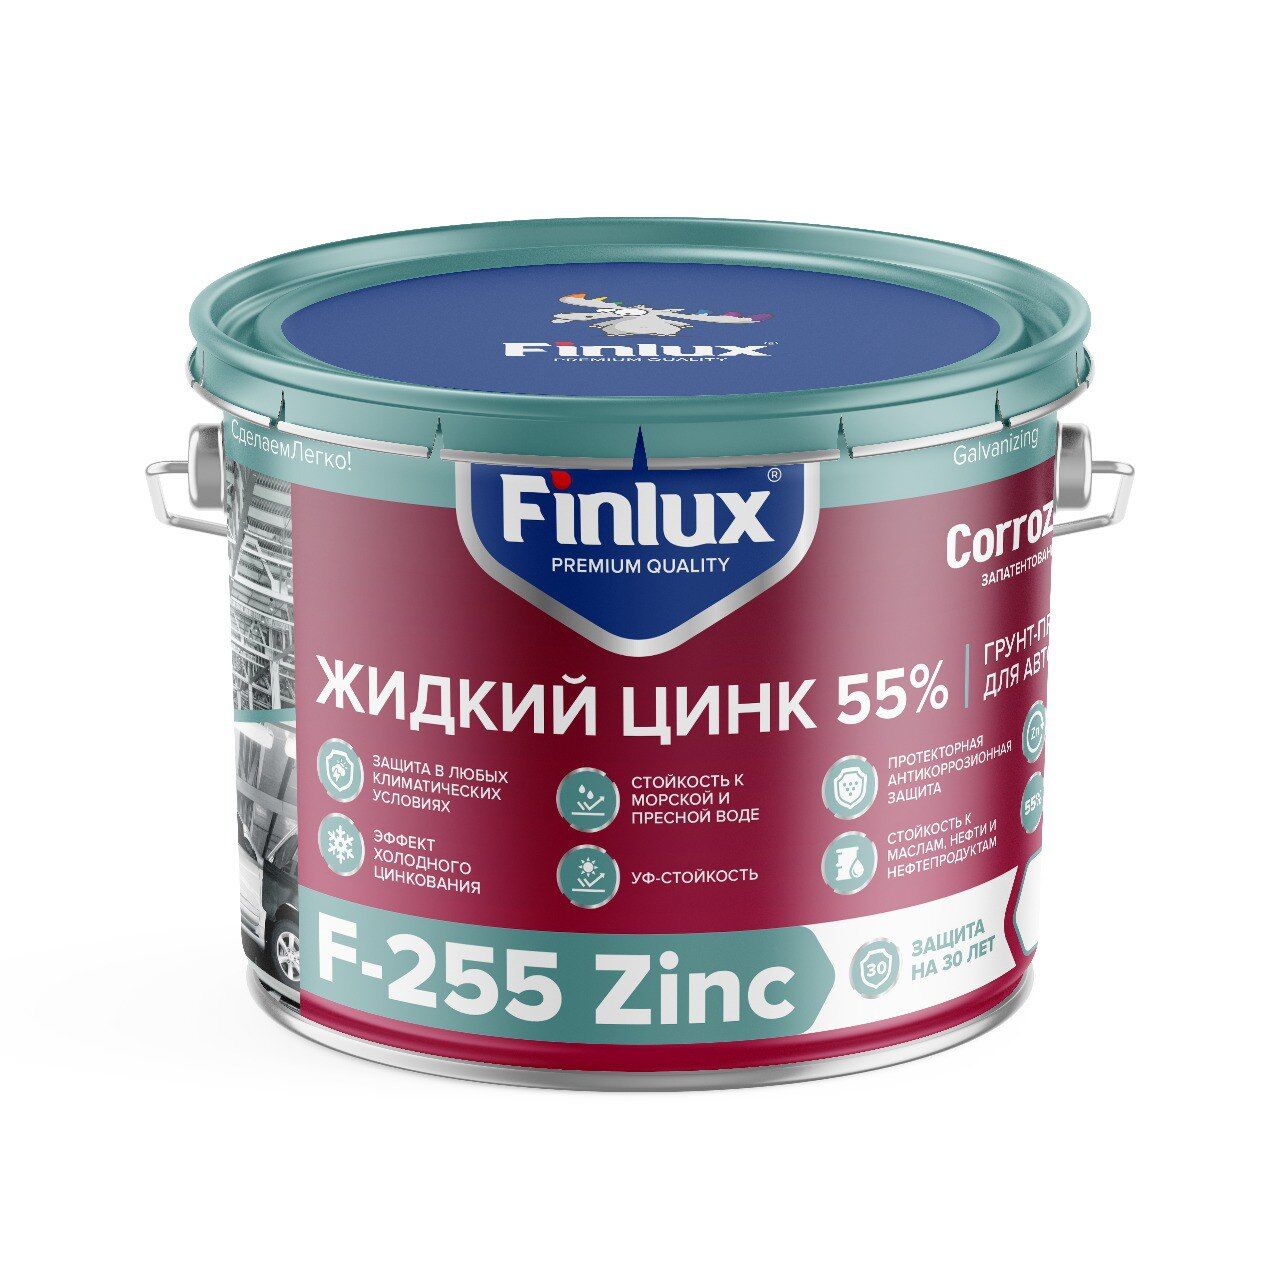 Цинконаполненный грунт-протектор для антикоррозионной защиты металла от ржавчины Finlux F-255 Zinc CorrozoStop 12 кг